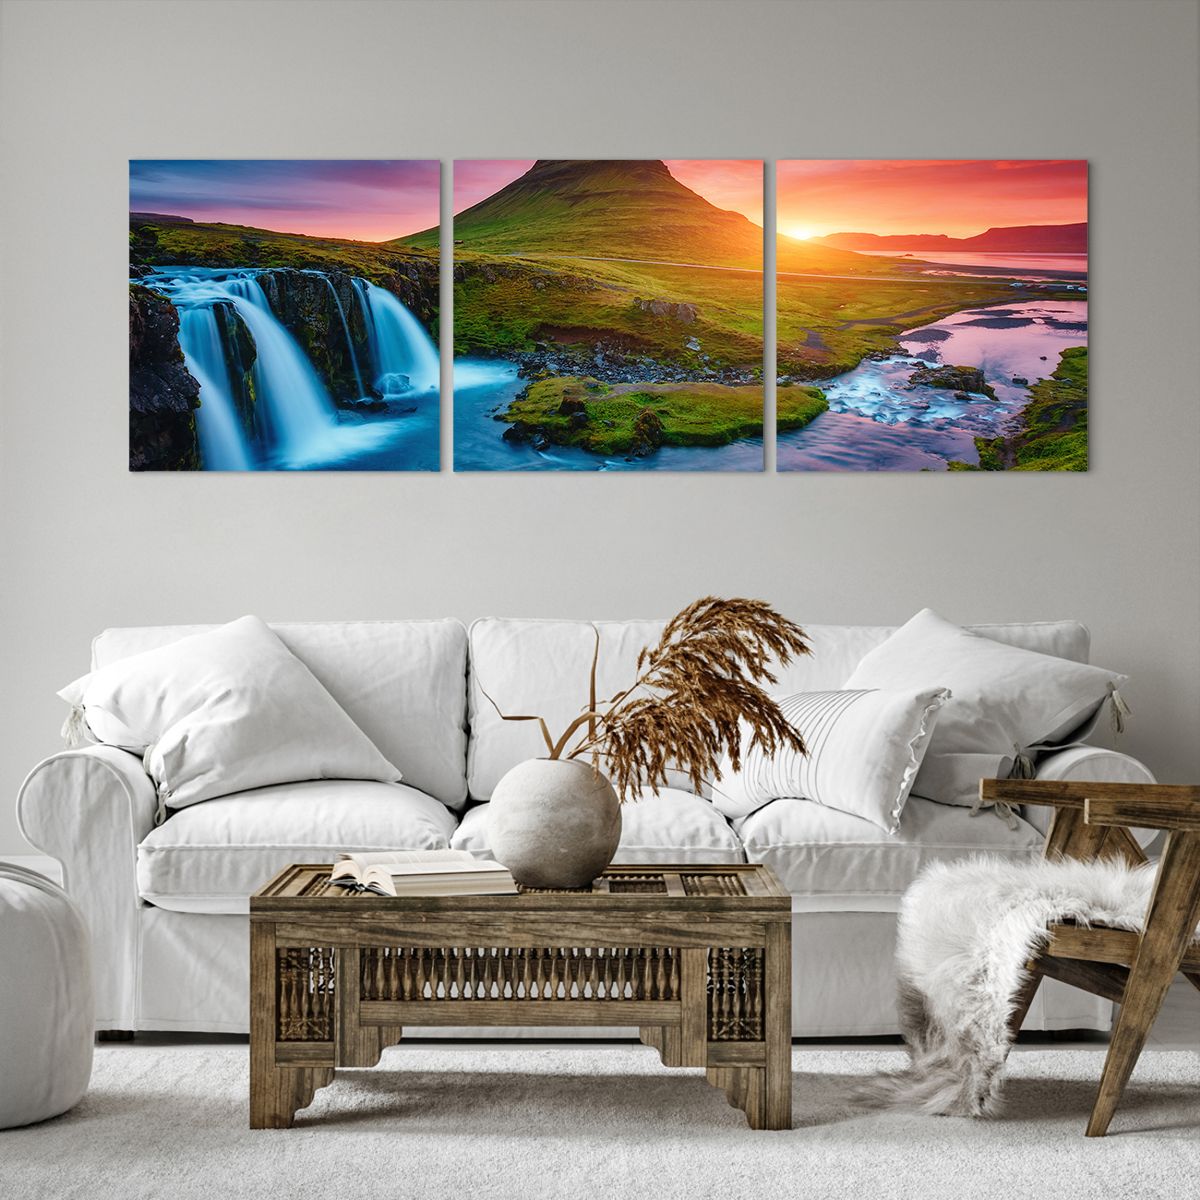 Obrazy na płótnie Krajobraz, Obrazy na płótnie Islandia, Obrazy na płótnie Kirkjufellsfoss, Obrazy na płótnie Wulkan, Obrazy na płótnie Wodospad